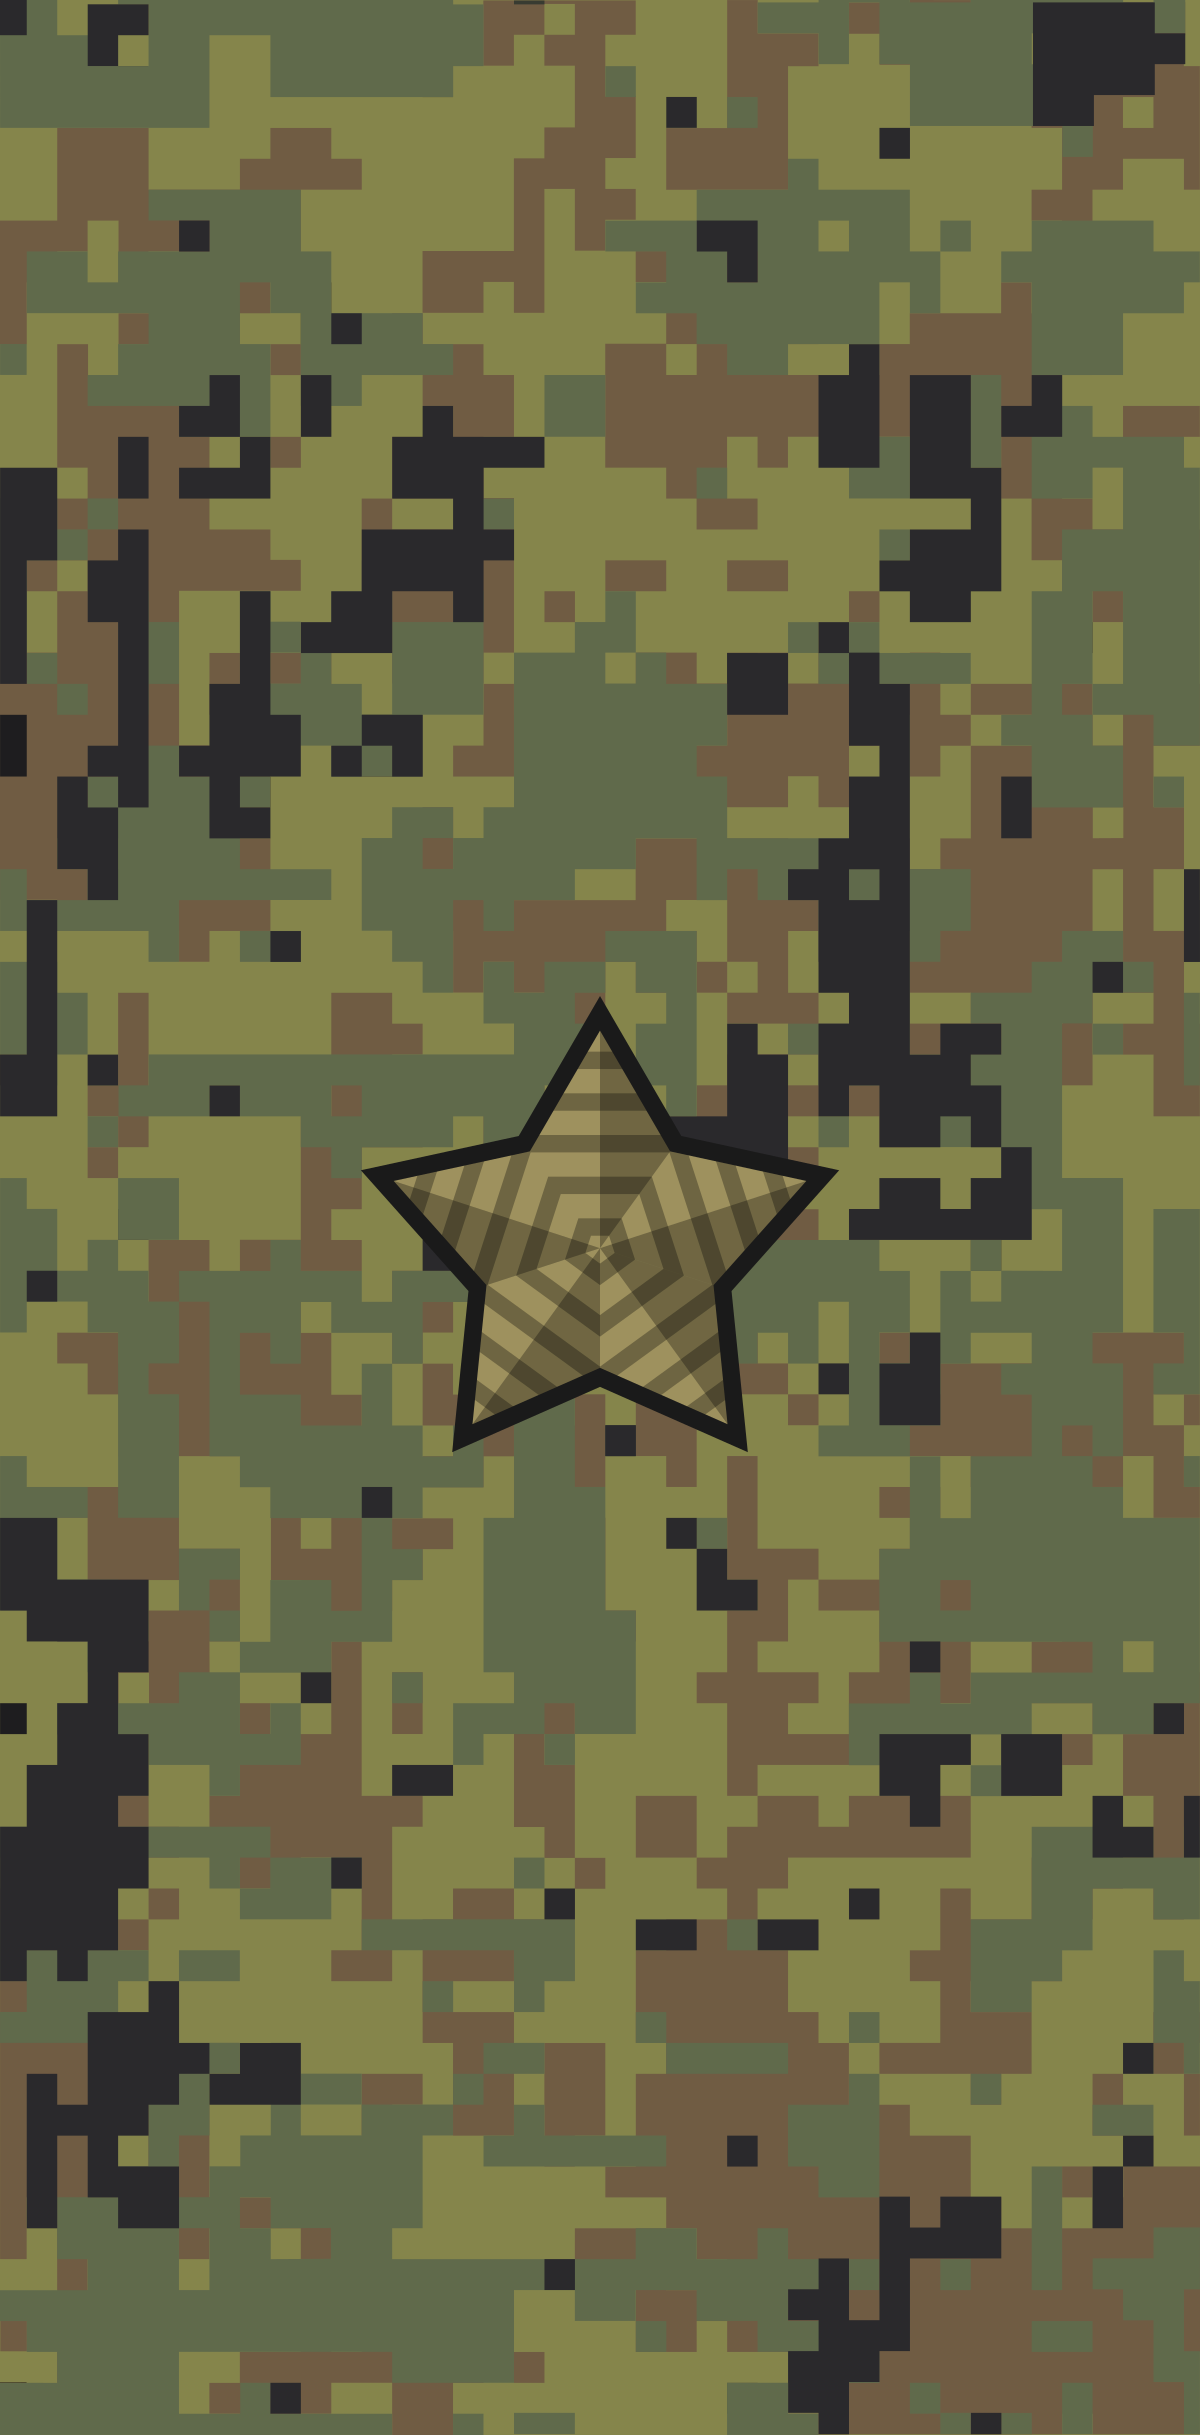 File:Russia-Army-OF-3-camo (2010).svg - Wikipedia